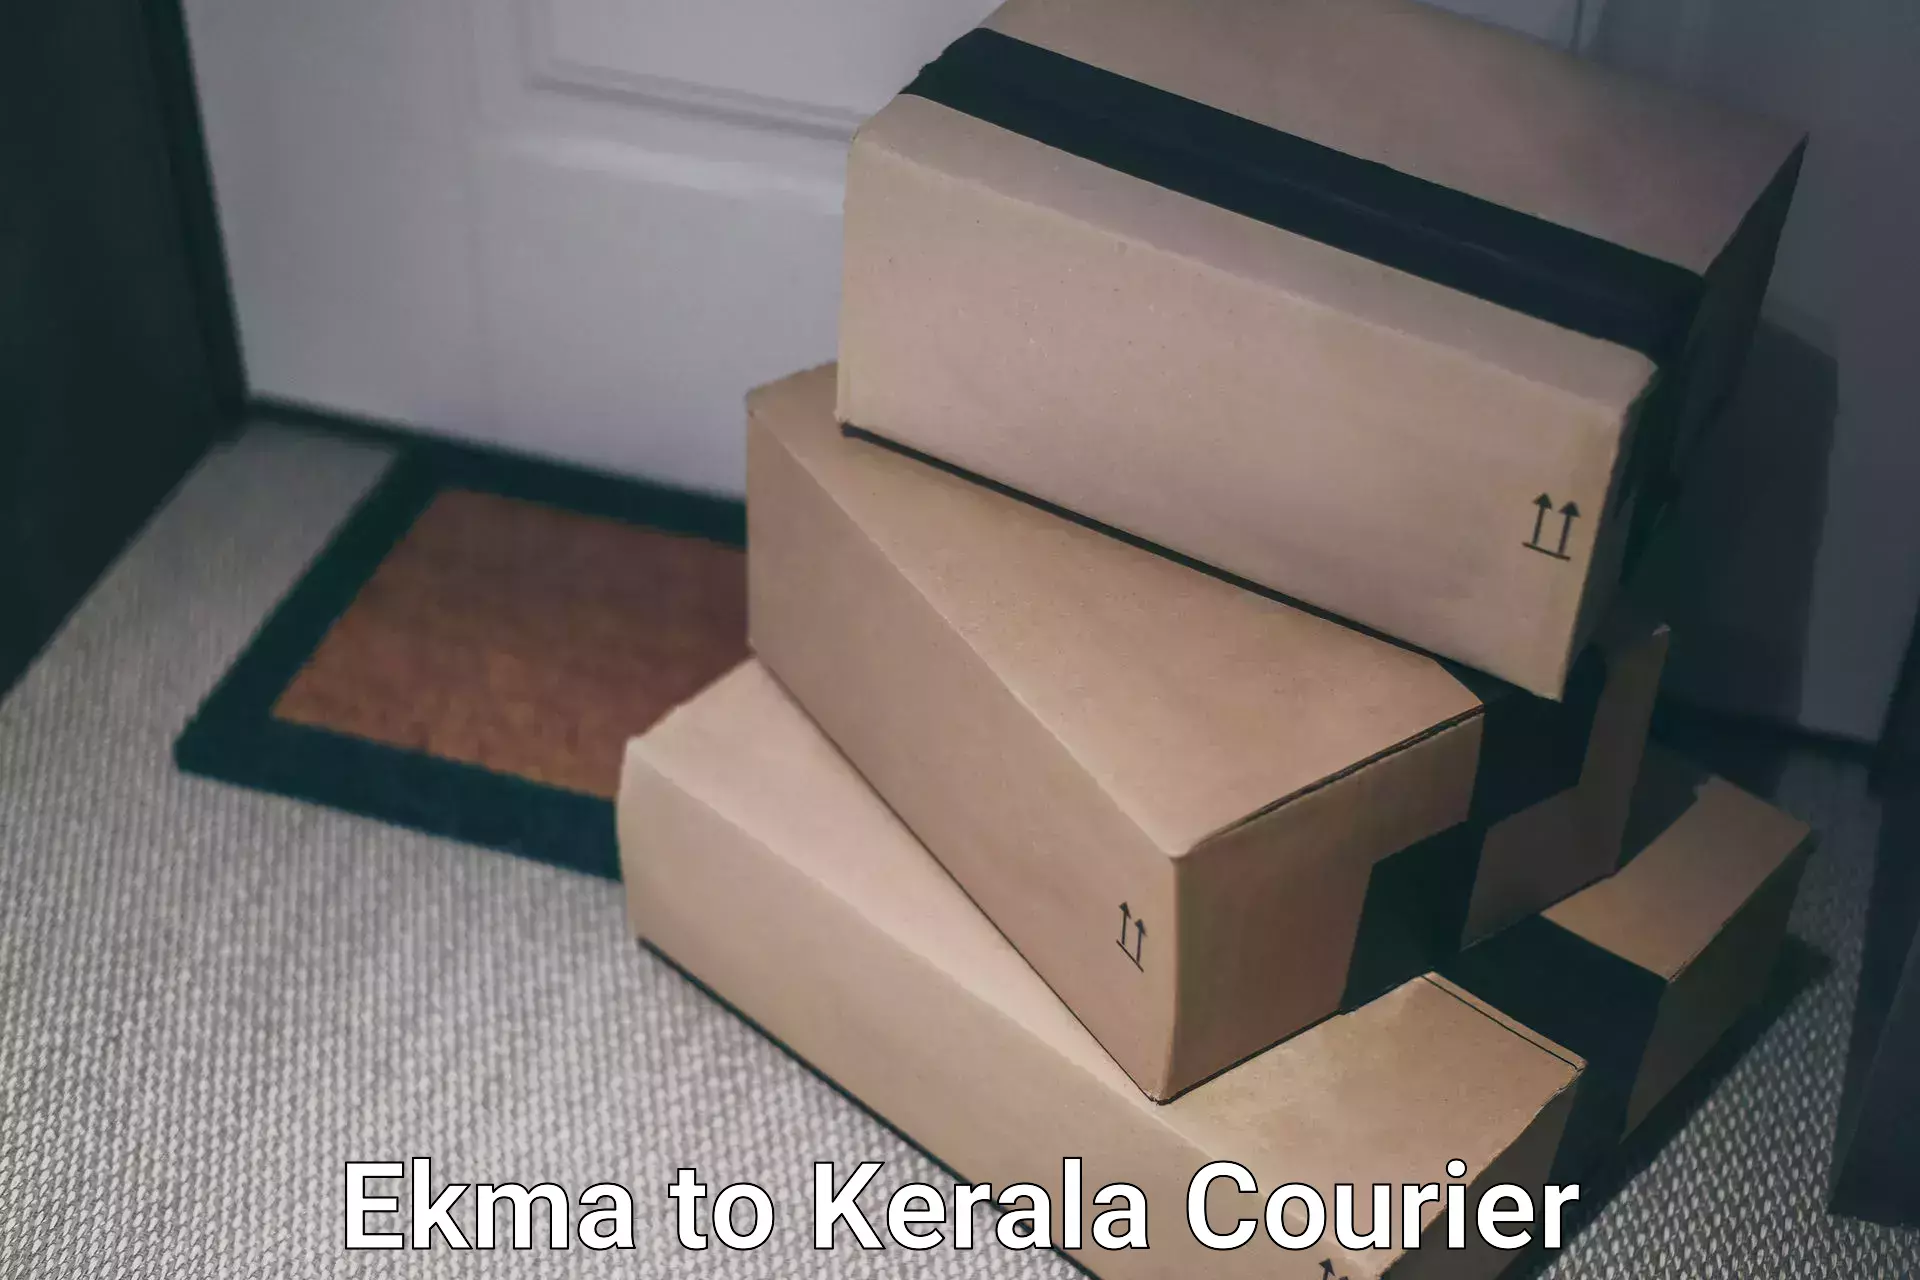 Digital courier platforms Ekma to Agali